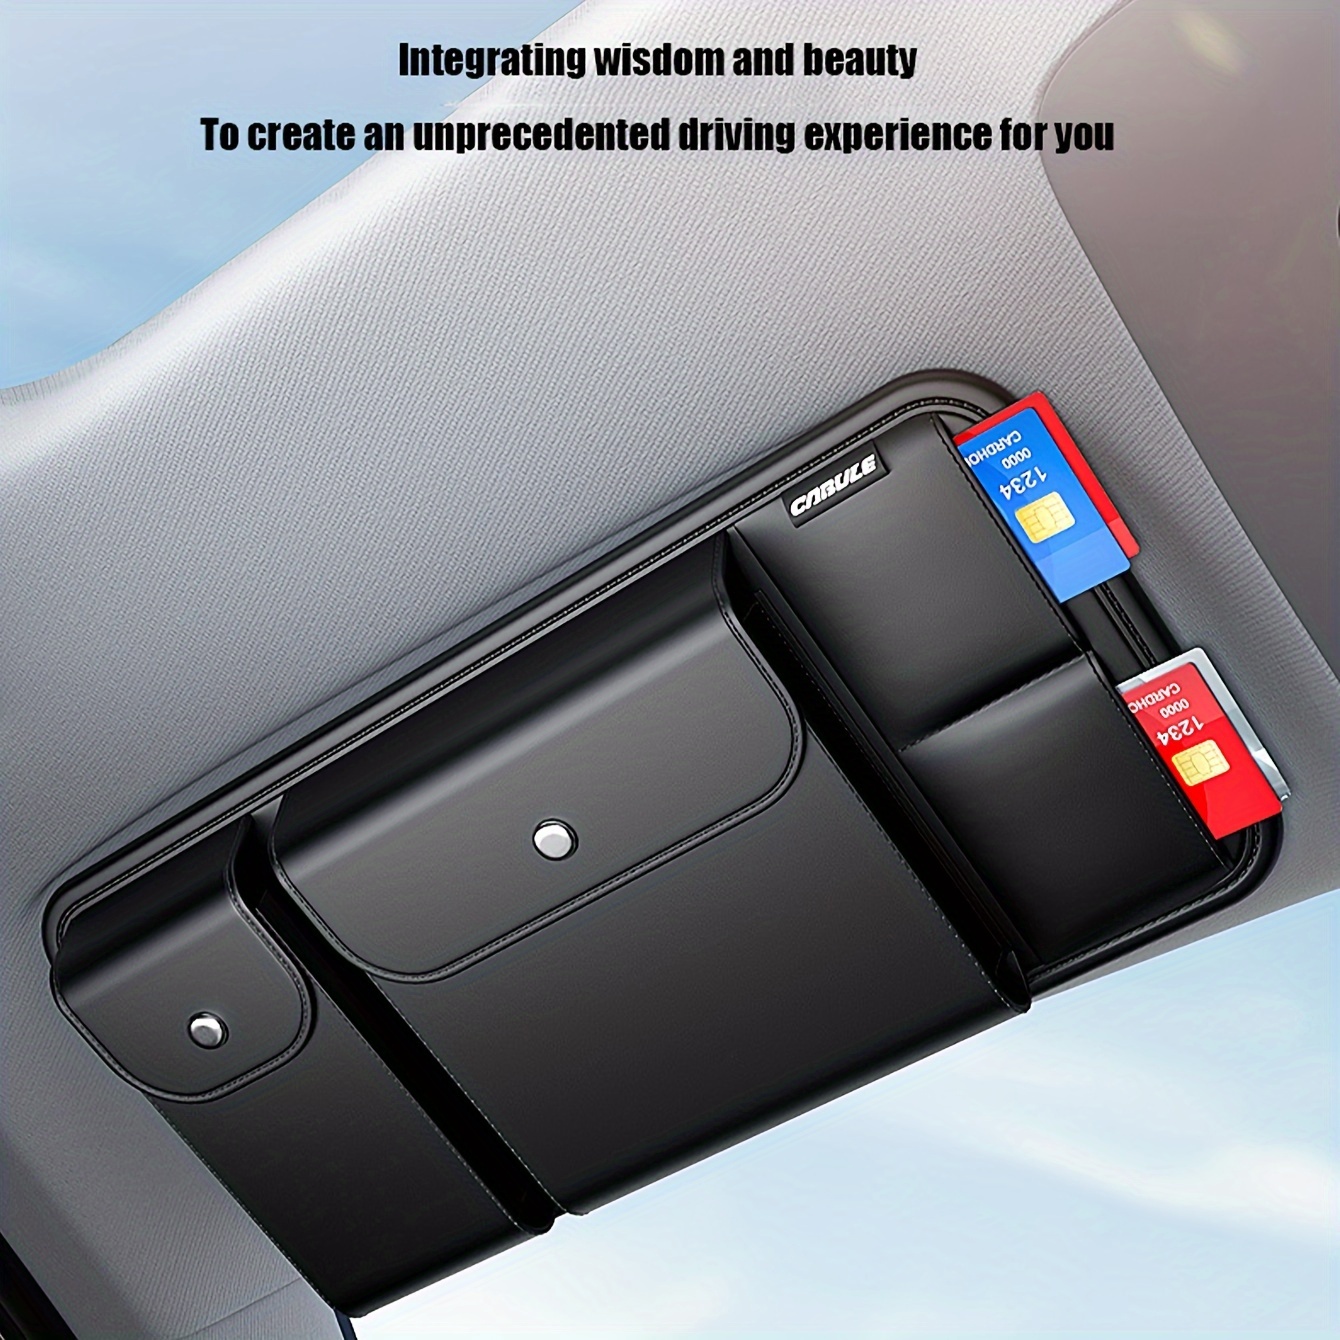 

Car Visor Storage Multi-functional Car Glasses Holder Inside The Driver's License Bag Ticket Card Holder Storage Bag